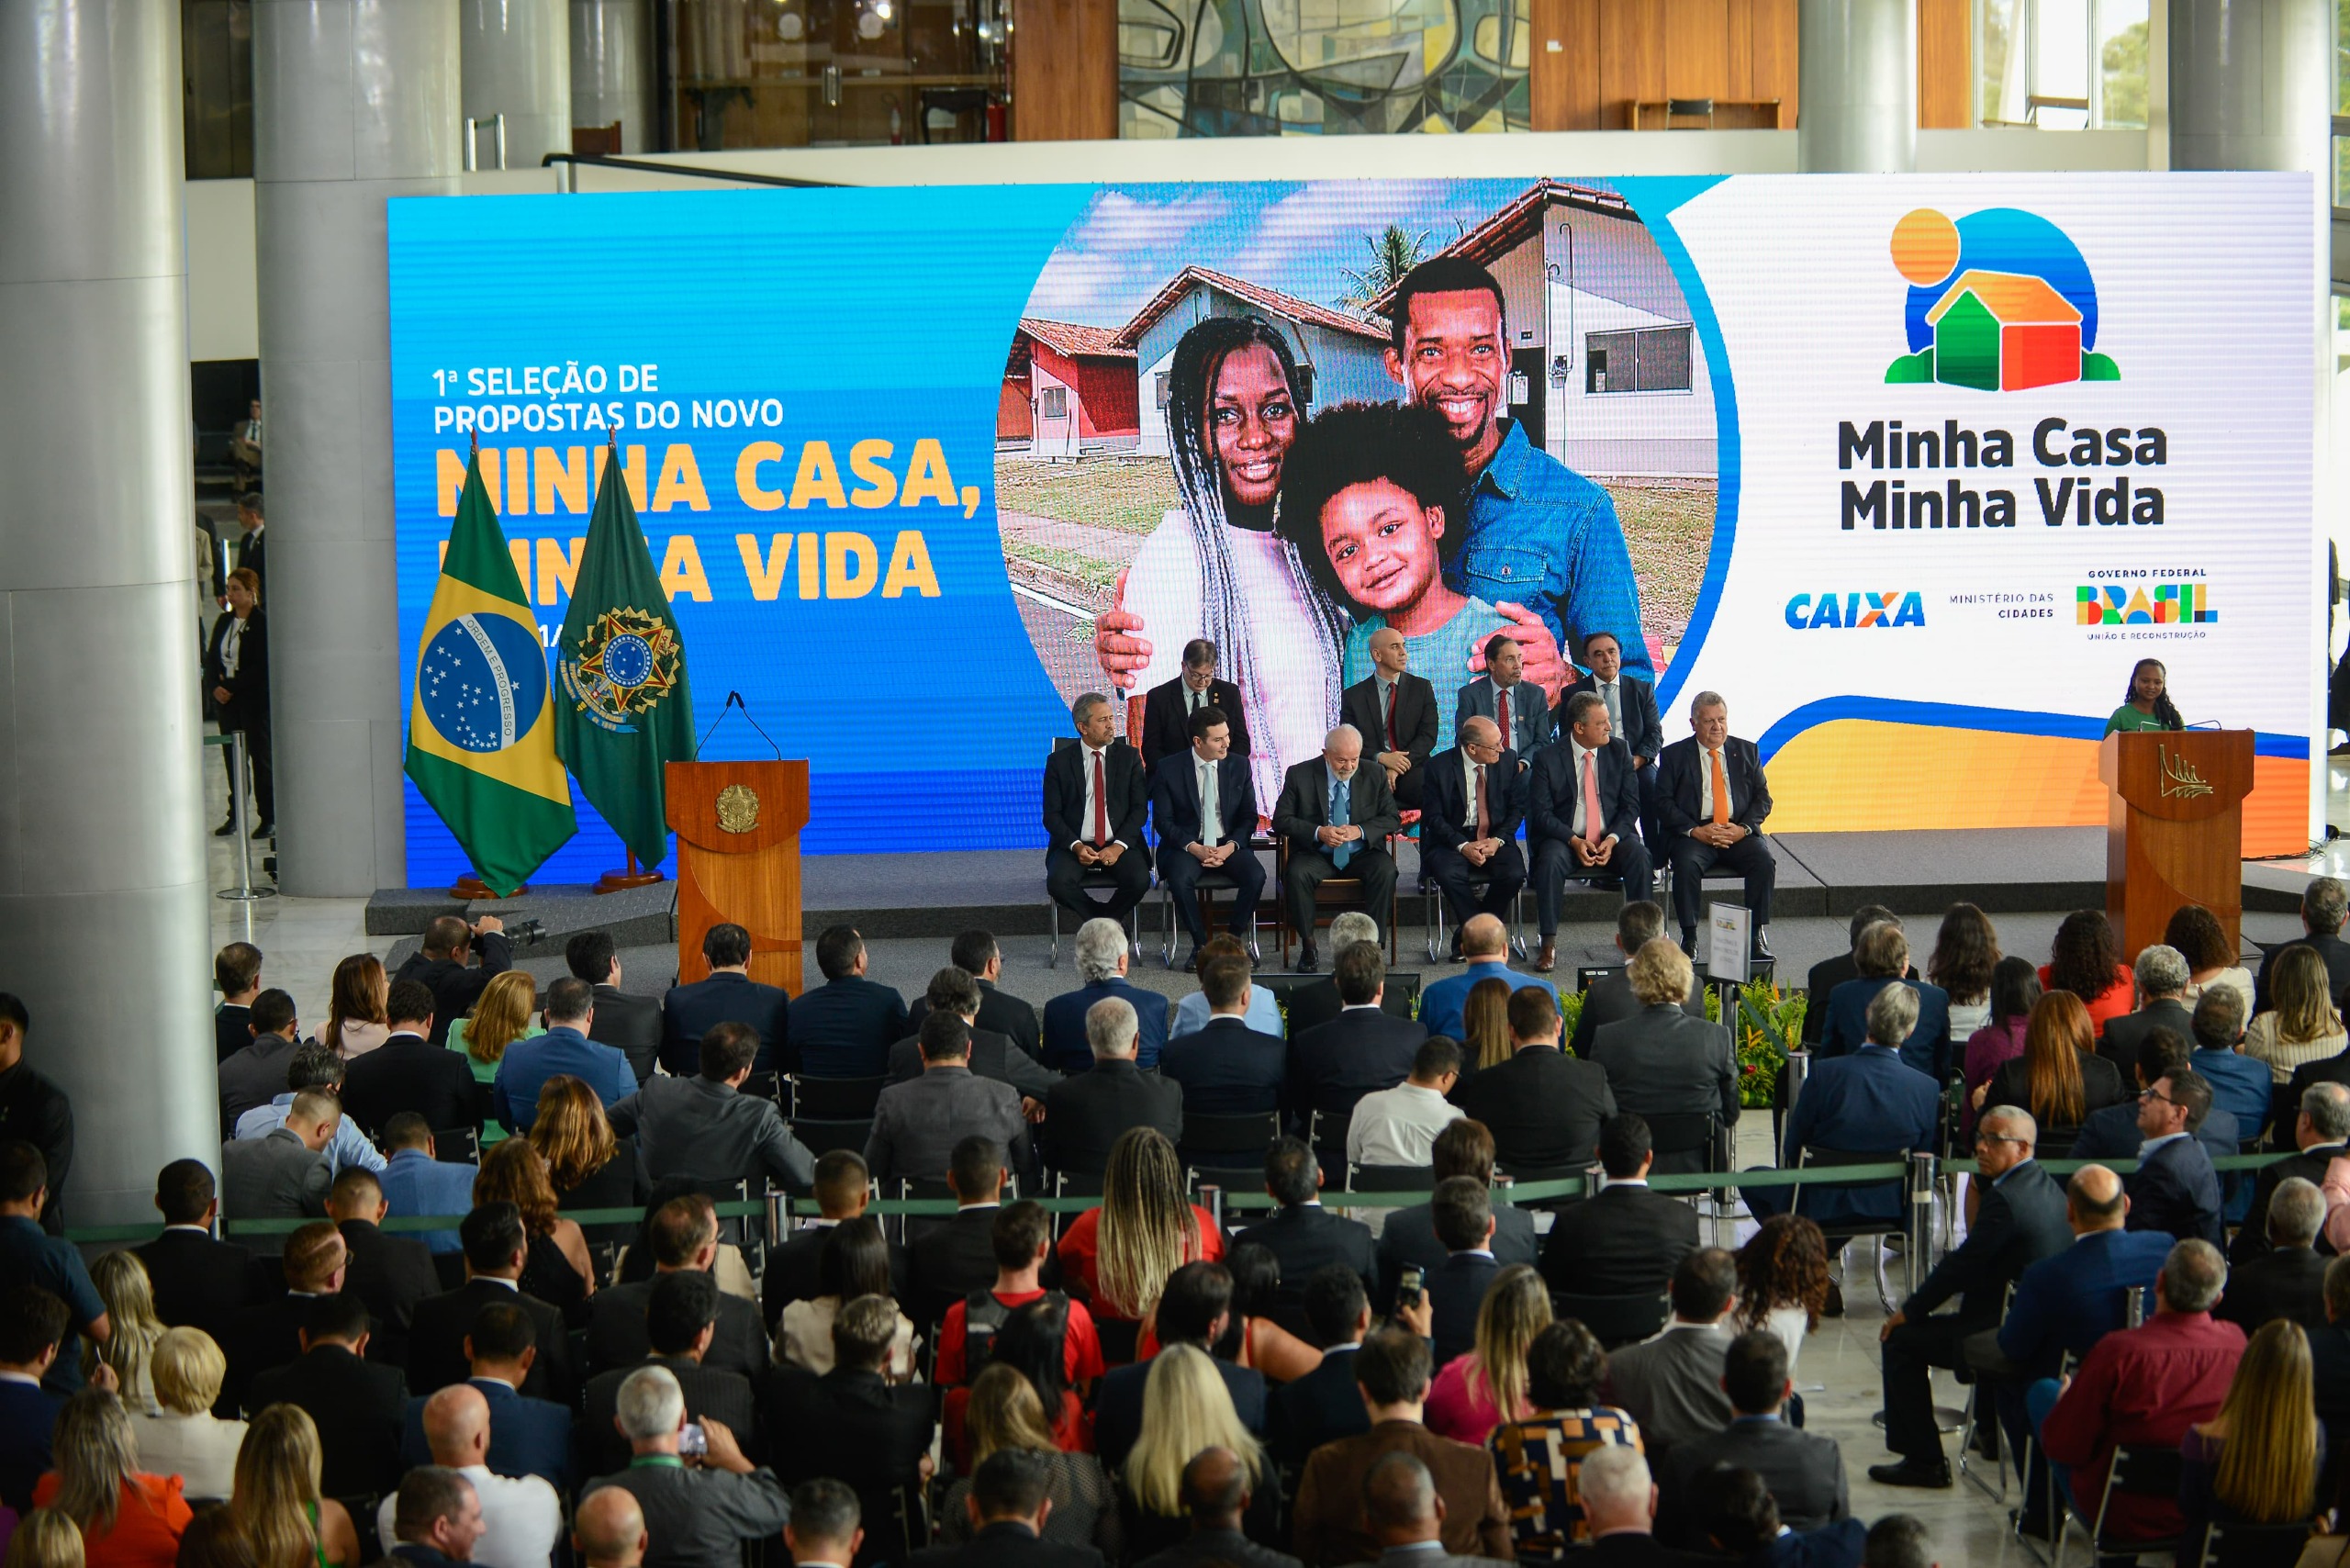 Caiado destaca que Goiás é o único Estado a conceder casas a custo zero, ao participar do lançamento do novo Minha Casa, Minha Vida